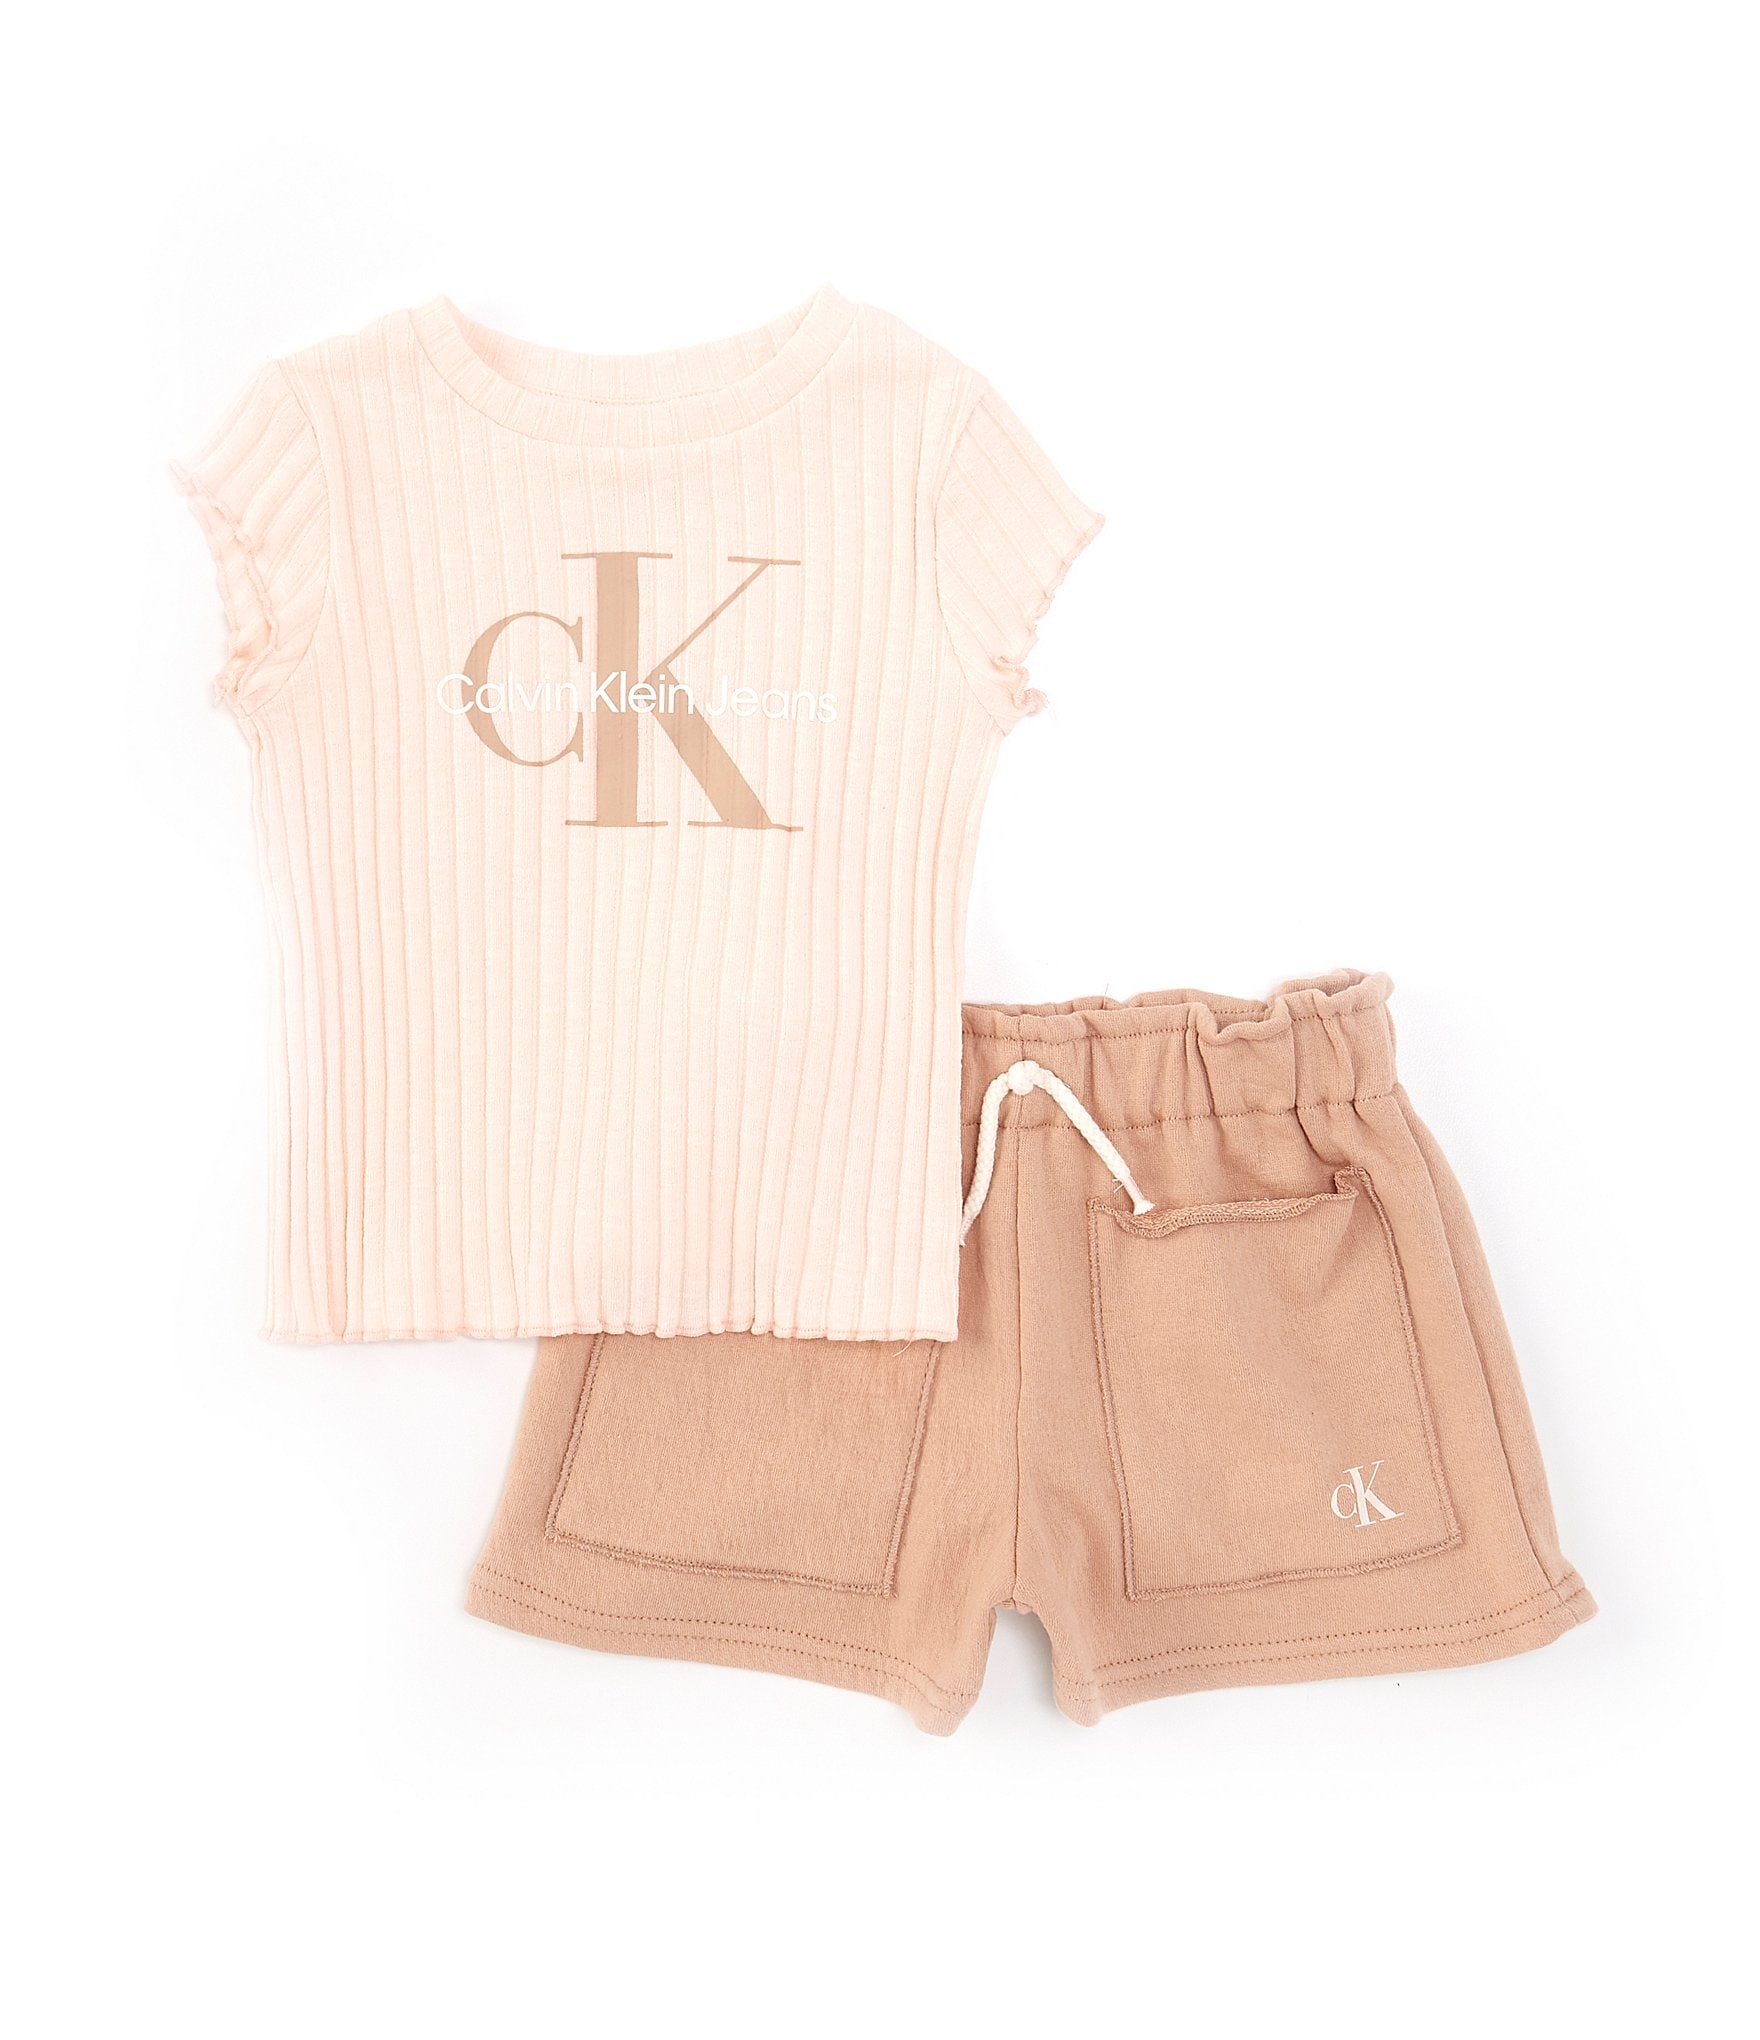 Calvin Klein Girls Clothing & Accessories